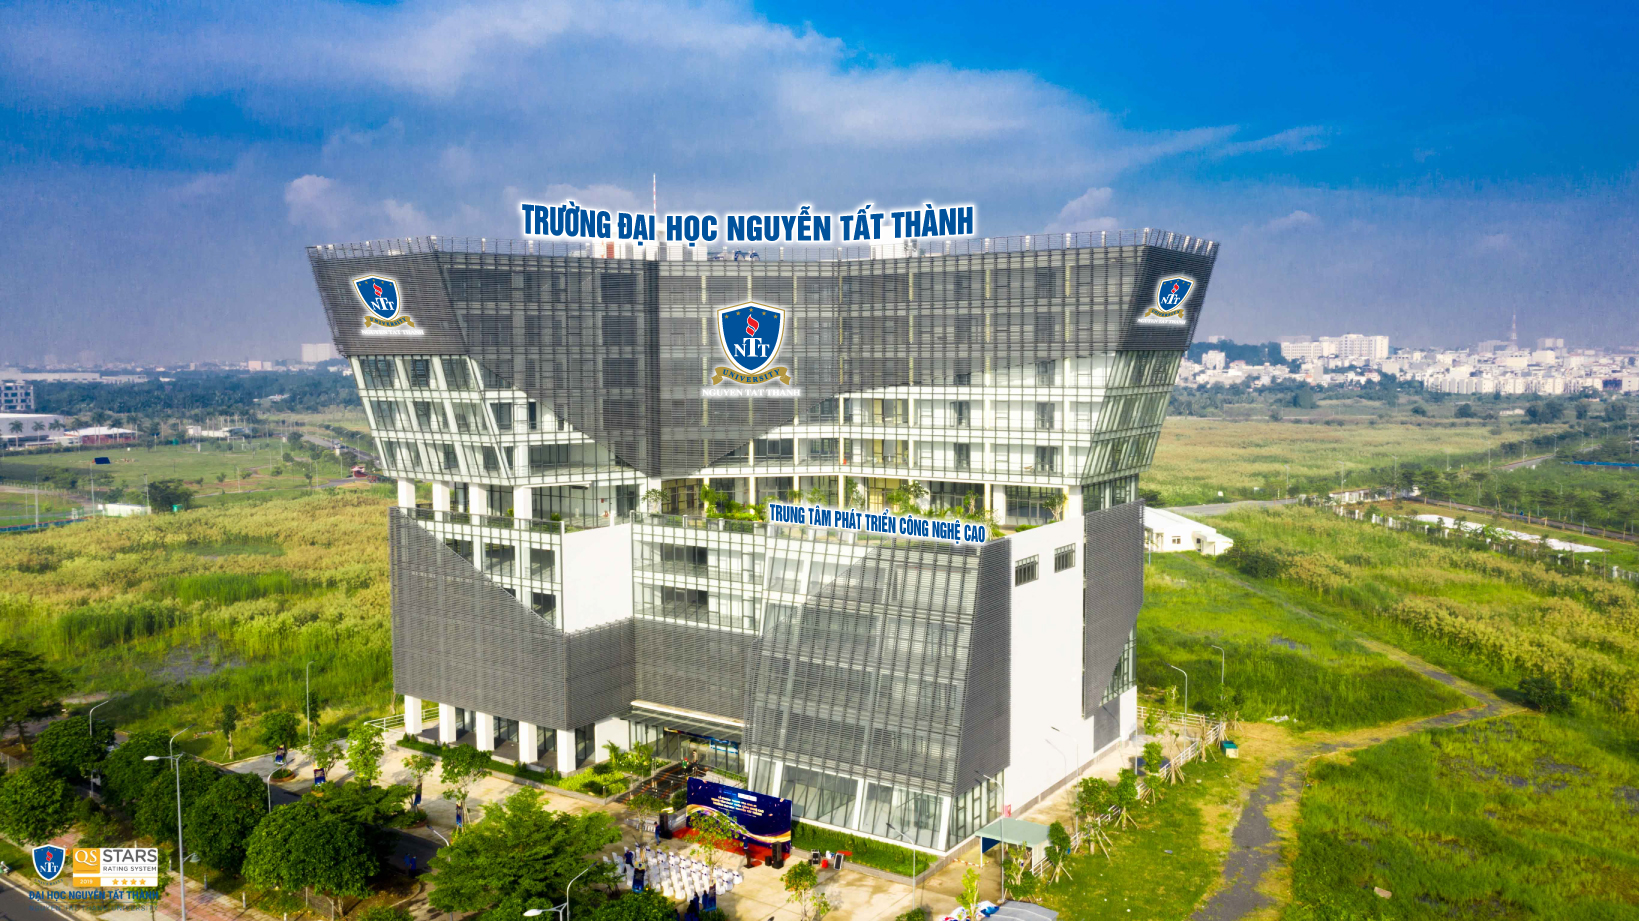 Trường ĐH Nguyễn Tất Thành xuất sắc lọt Top 3 các trường đại học Việt Nam trên bảng xếp hạng SCImago Institutions Rankings 2022